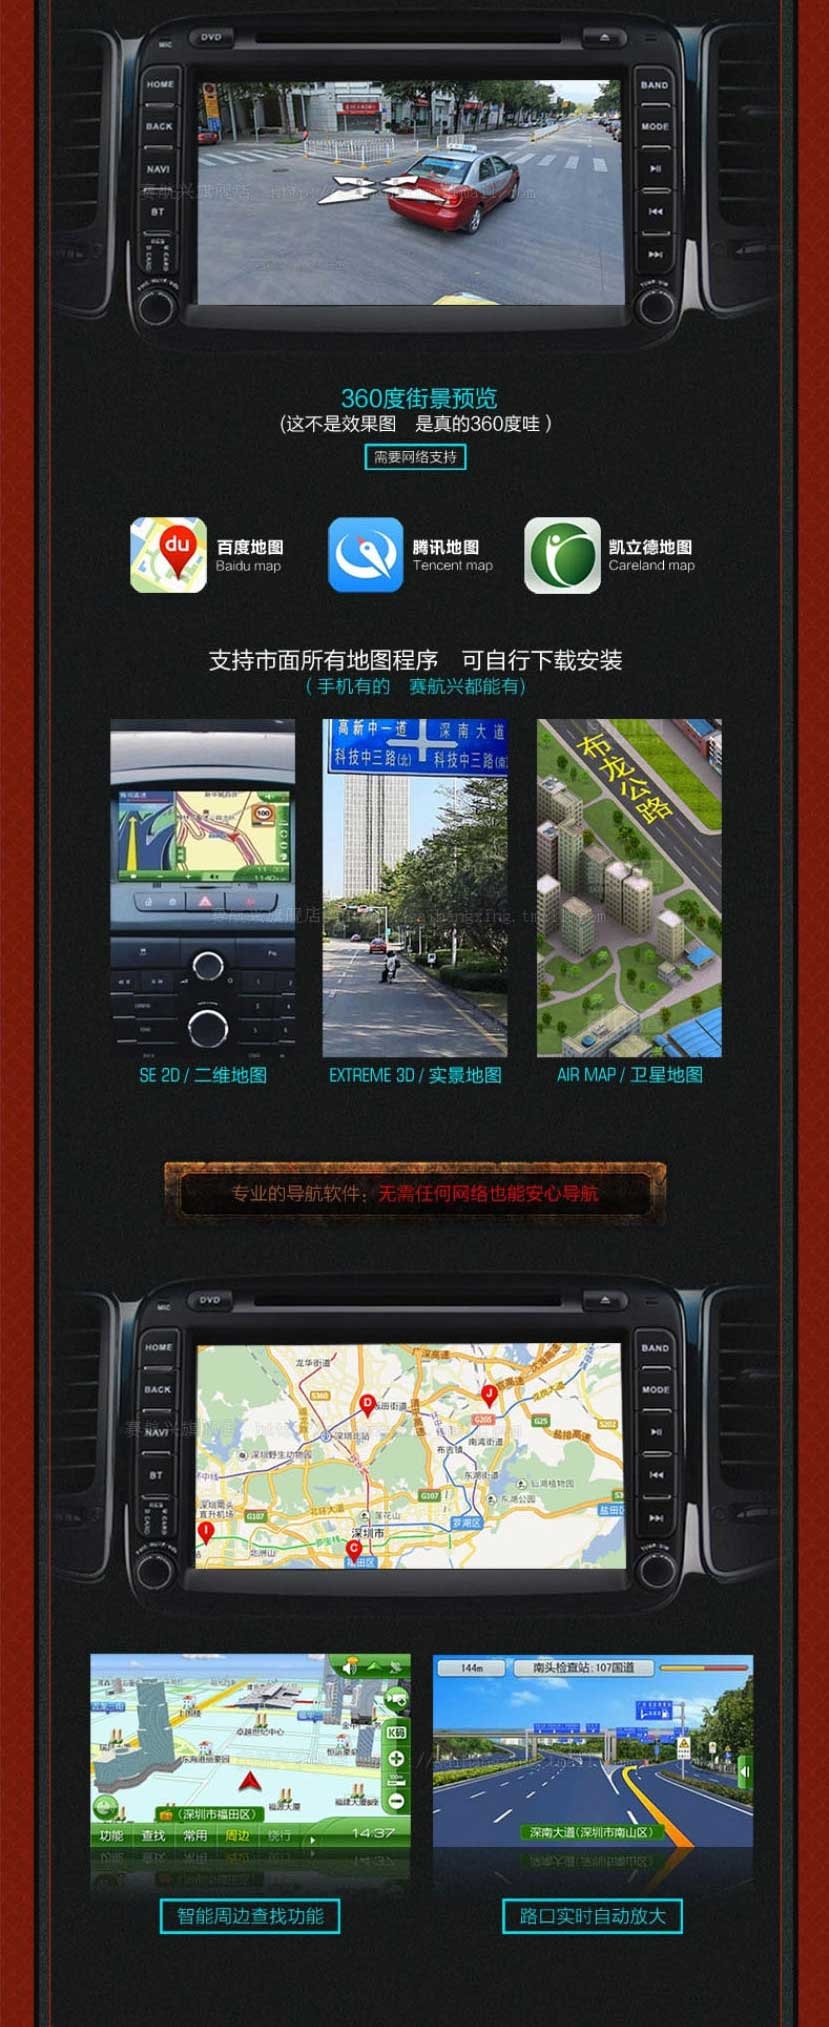 安卓北京BJ40专车用车载DVD导航仪一体机